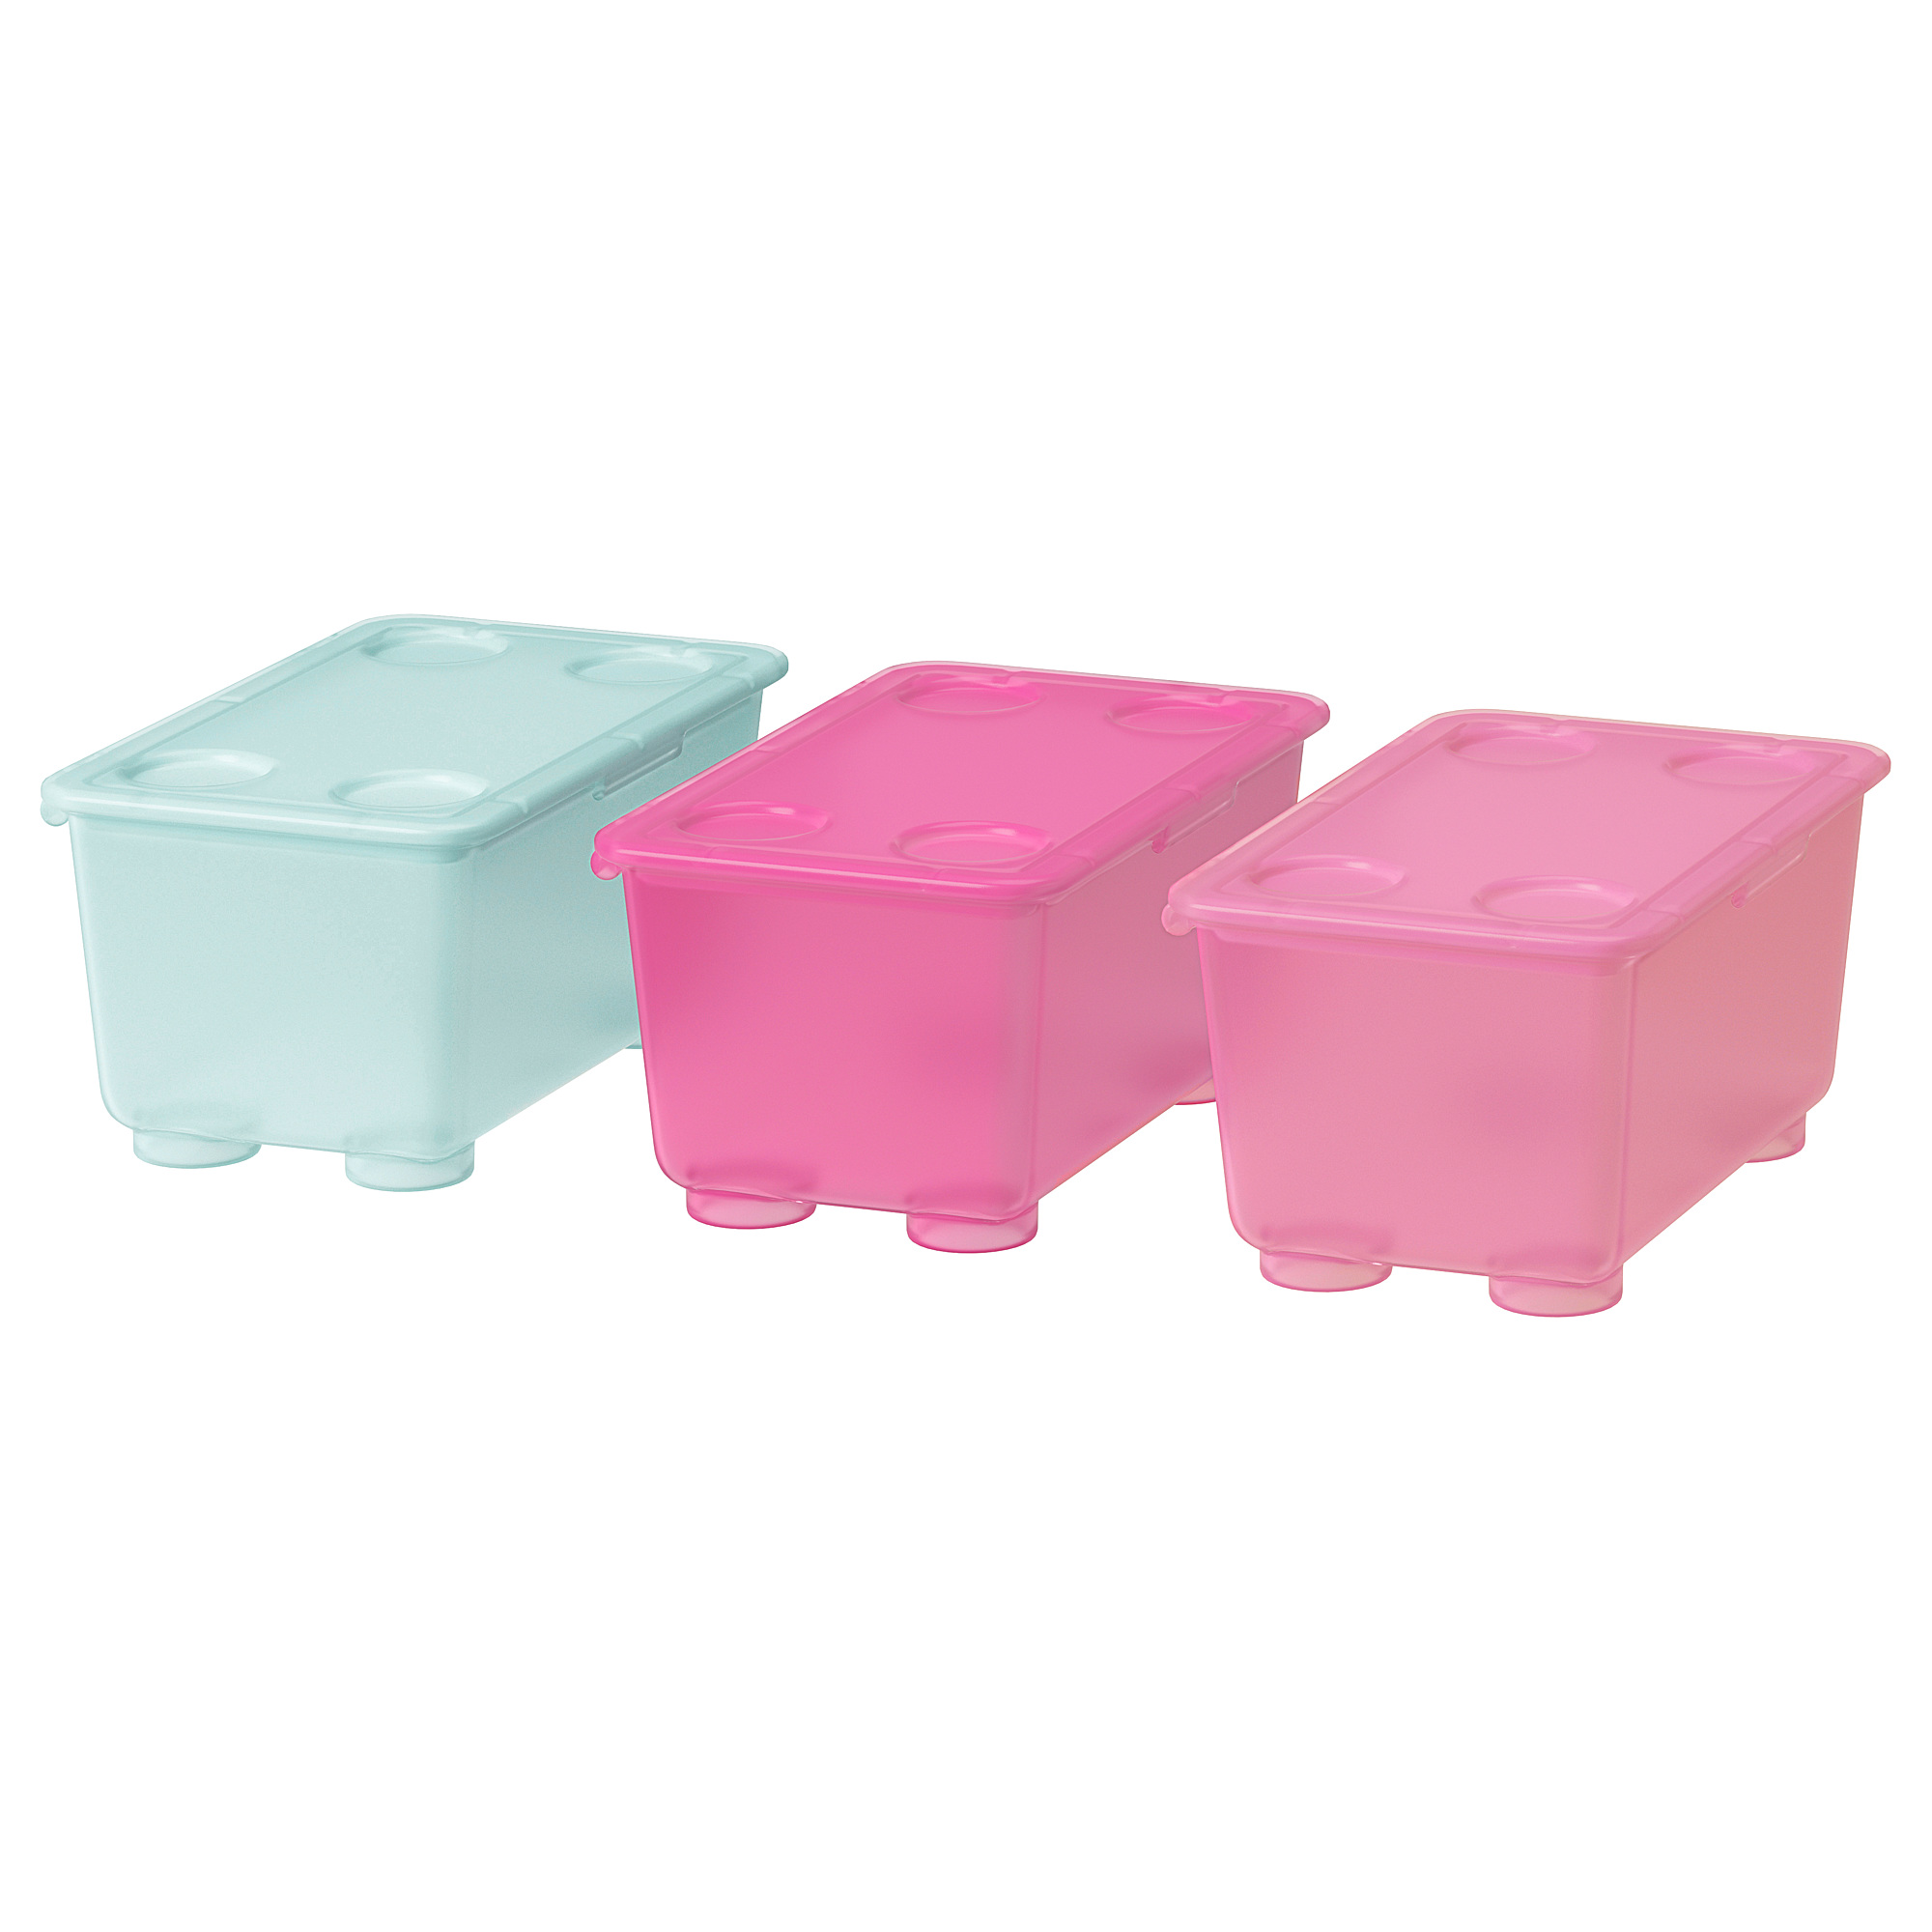 Купить контейнер икеа. Глис контейнер с крышкой ikea. Глис контейнер с крышкой, розовый, бирюзовый, 17x10 см 804.661.51. Глис коробка икеа. Контейнеры 3 шт. Глис ikea.